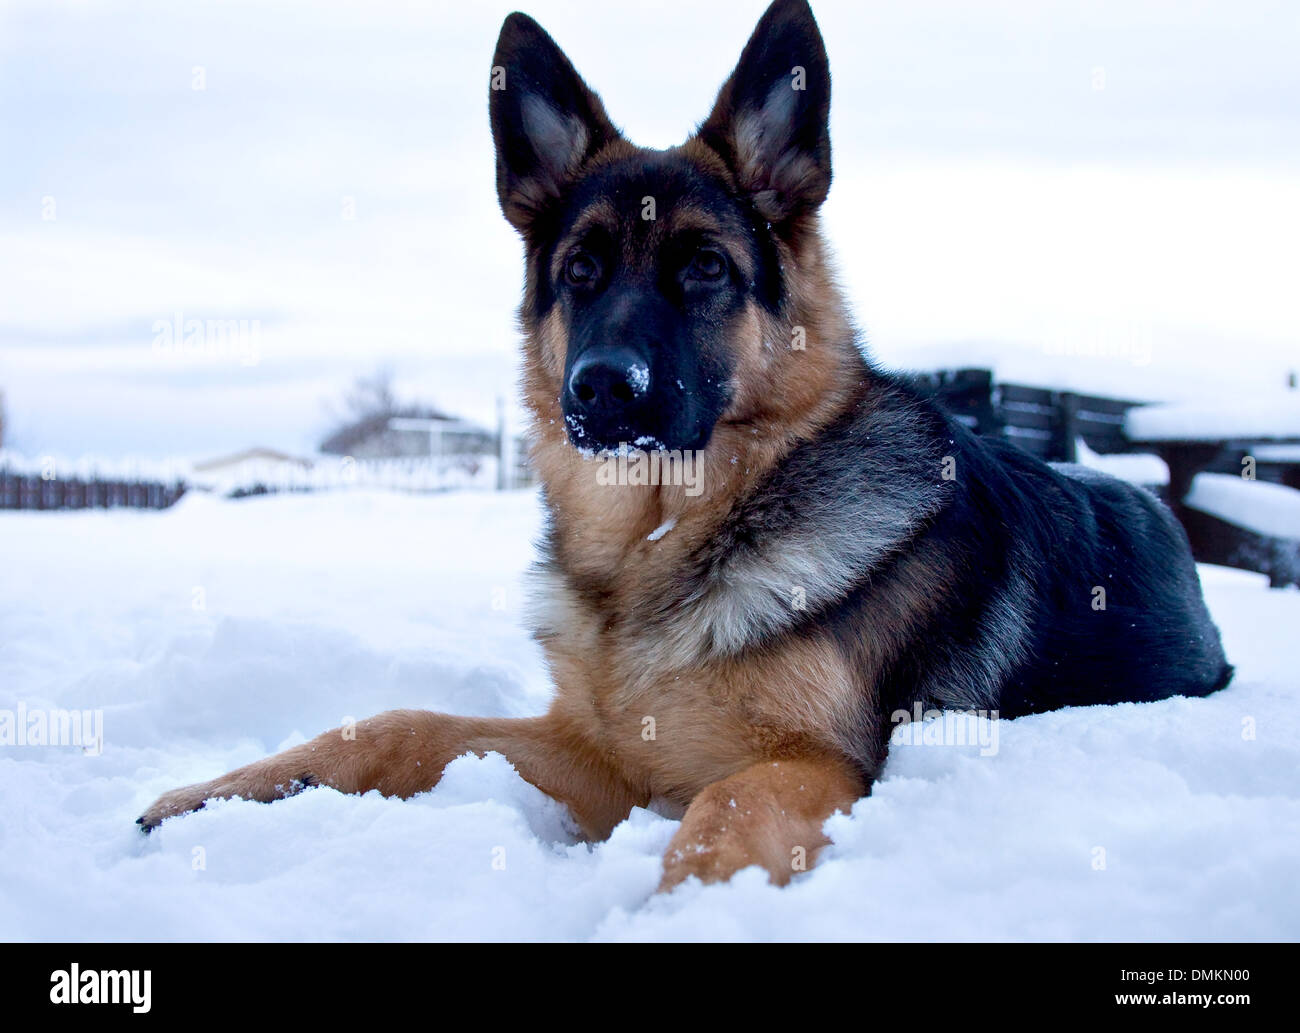 Hund Deutscher Schäferhund auf Schnee Stockfotografie - Alamy